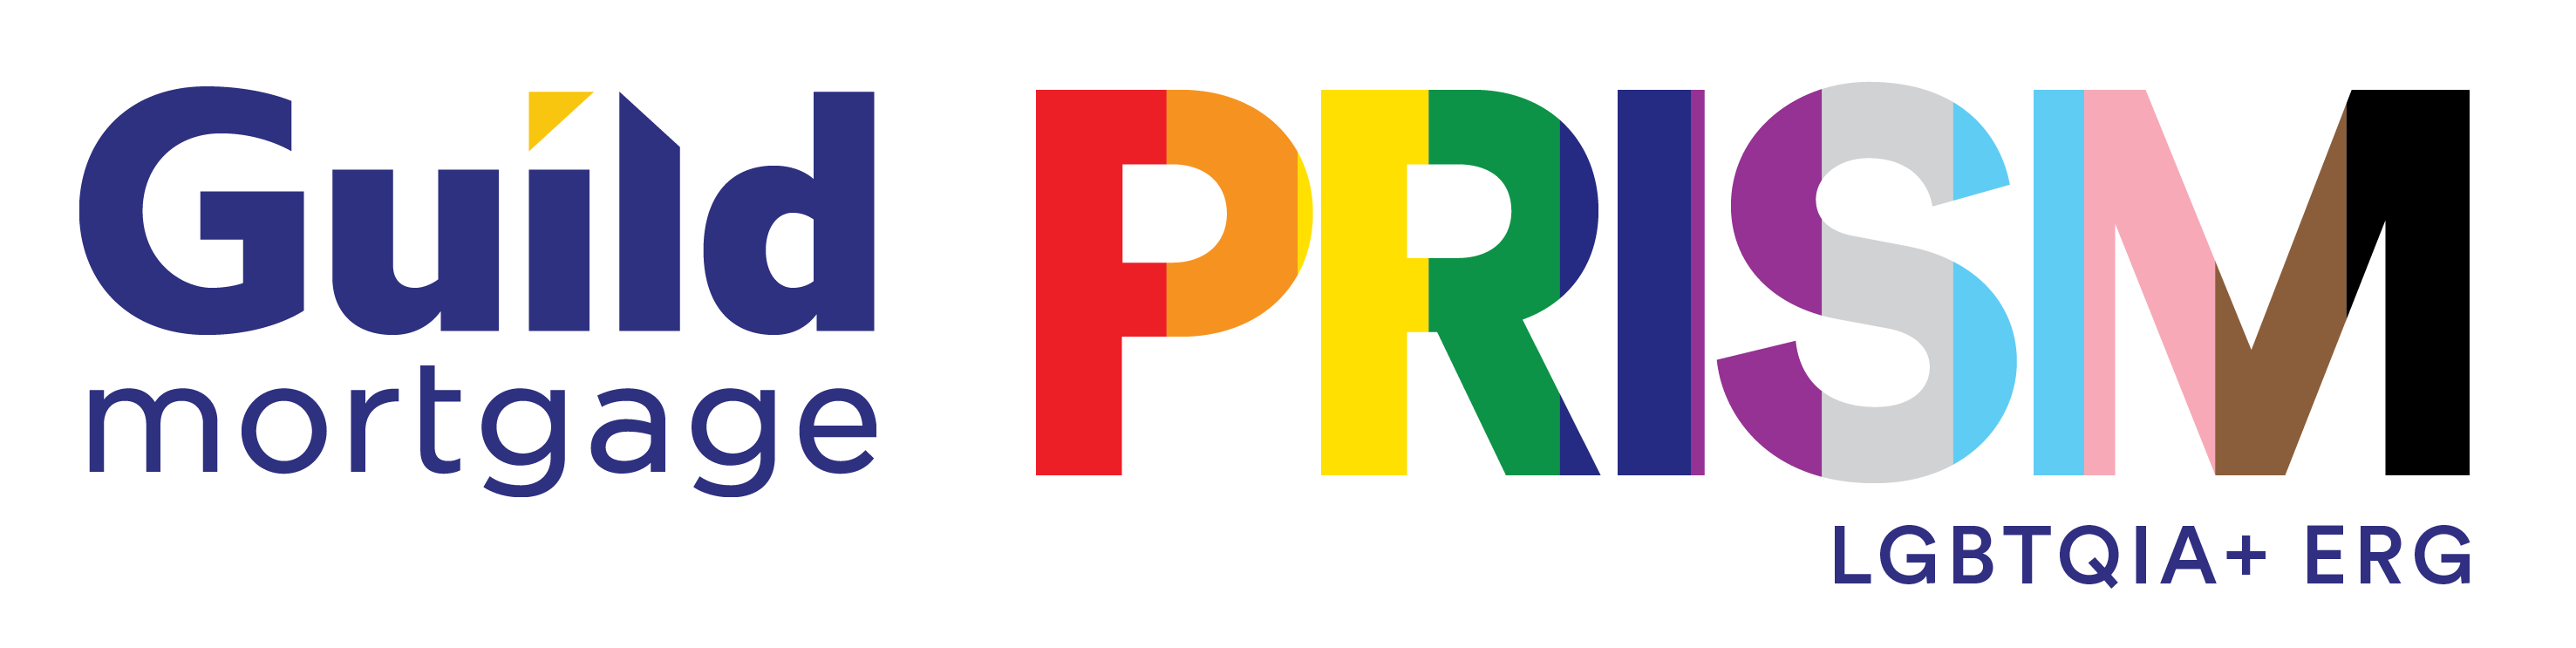 PRISM ERG Logo